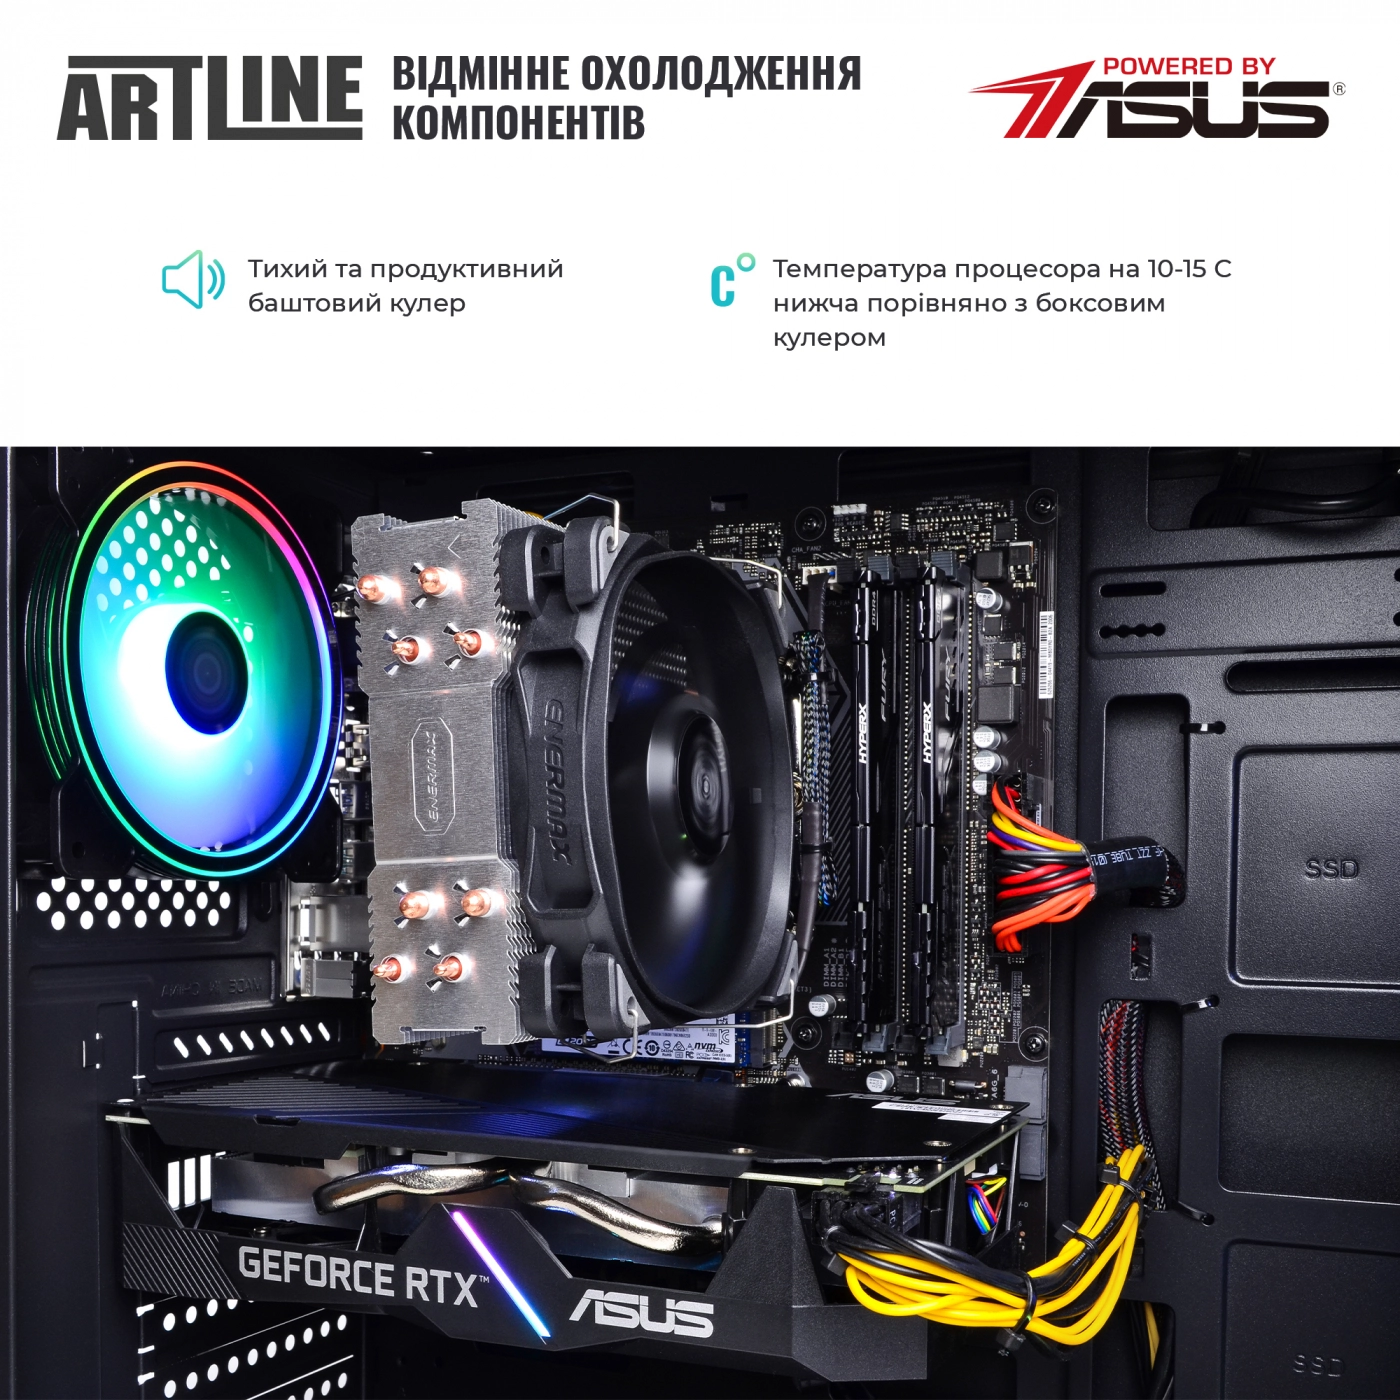 Купить Компьютер ARTLINE Gaming X74v18 - фото 7